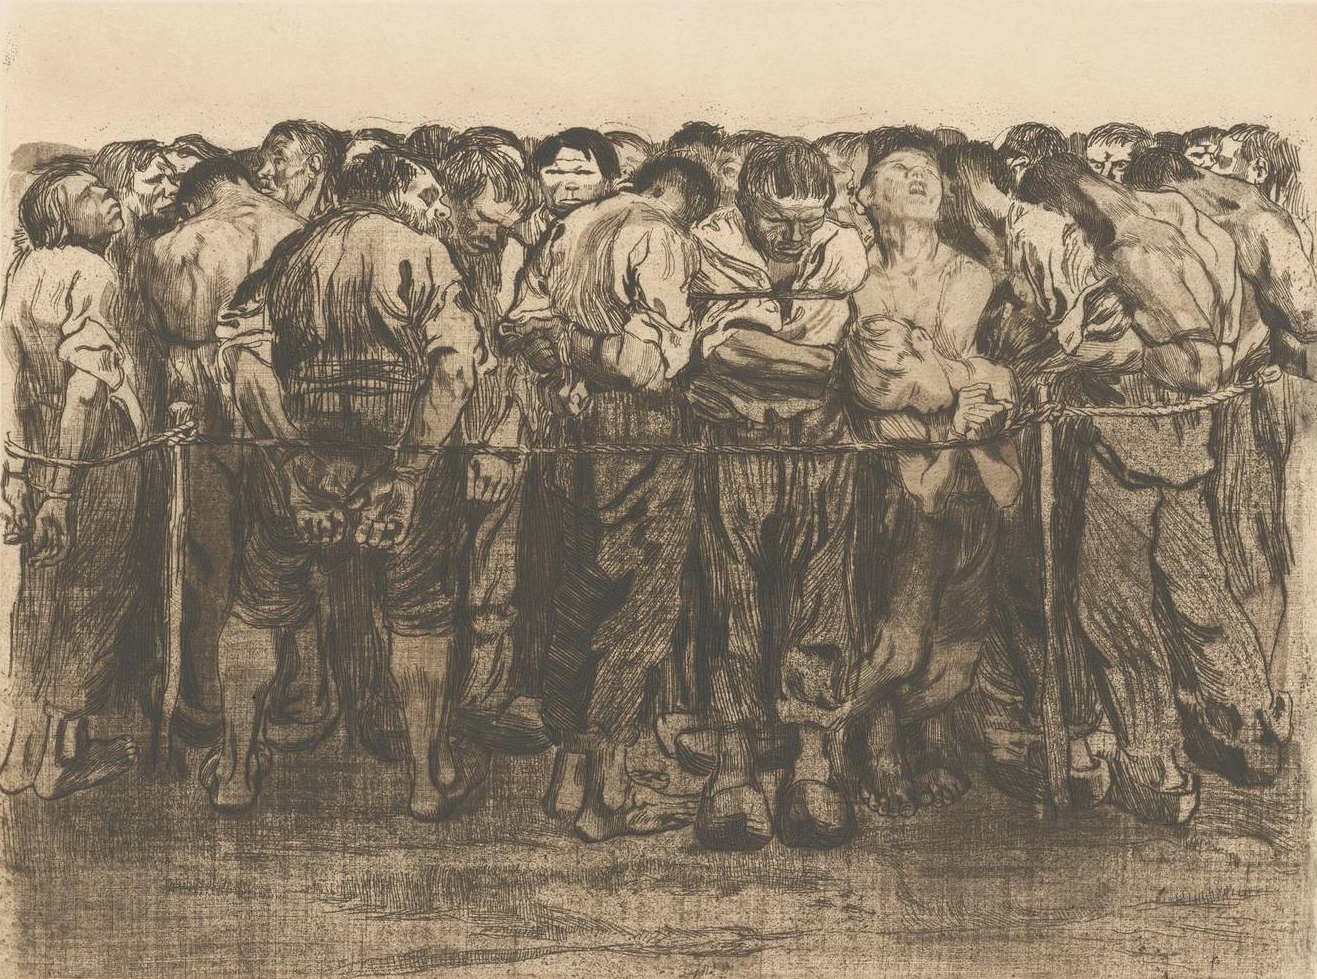 Кете Кольвиц. Заключённые. Офорт из цикла «Крестьянская война». 1908